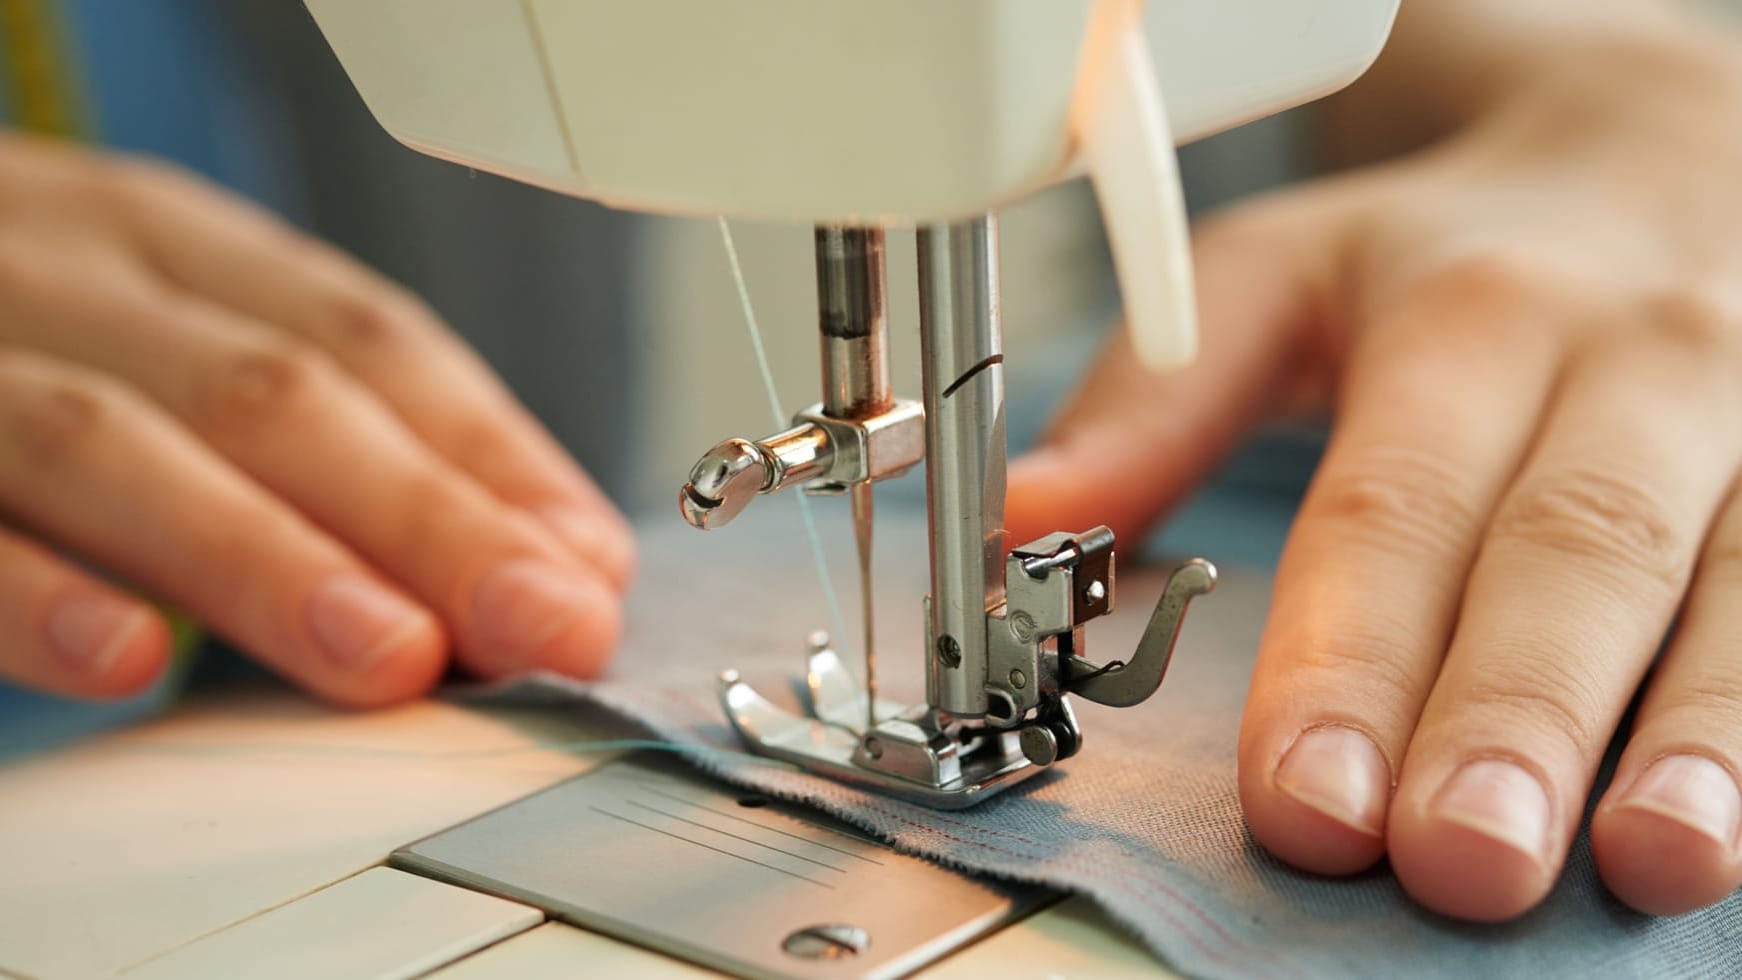 Предприниматели швейной отрасли в КР освобождены от оформления ЭТТН до 2027 года